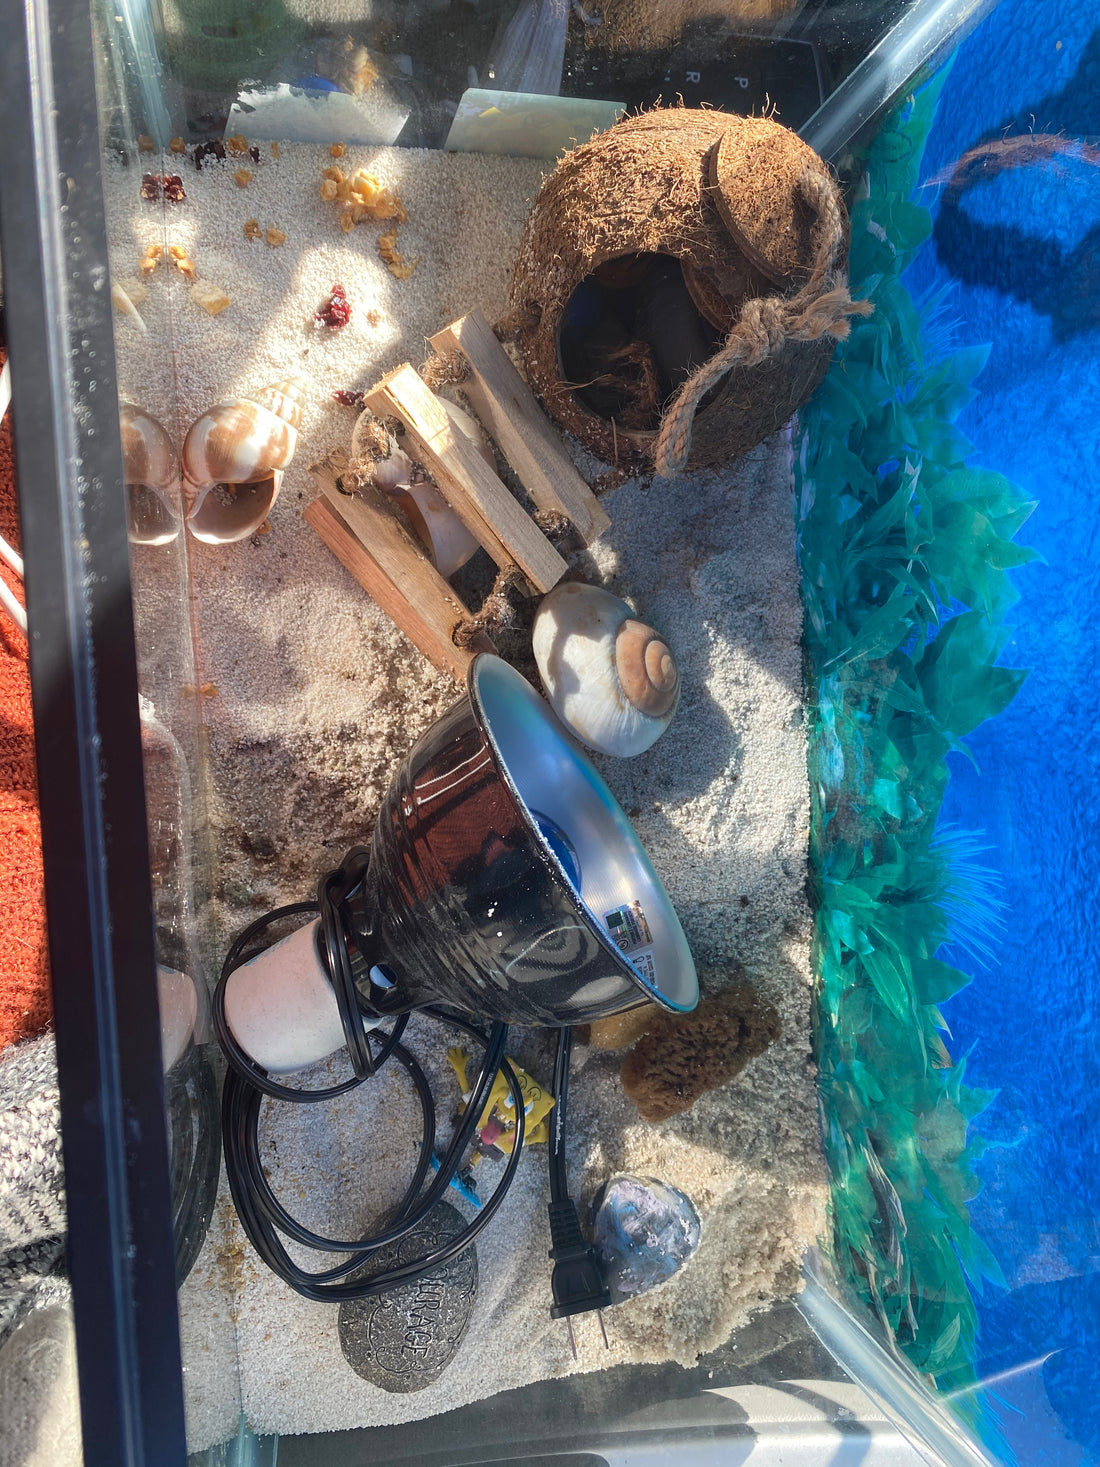 5 Hermit Crabs in a 10 gallon Rescue